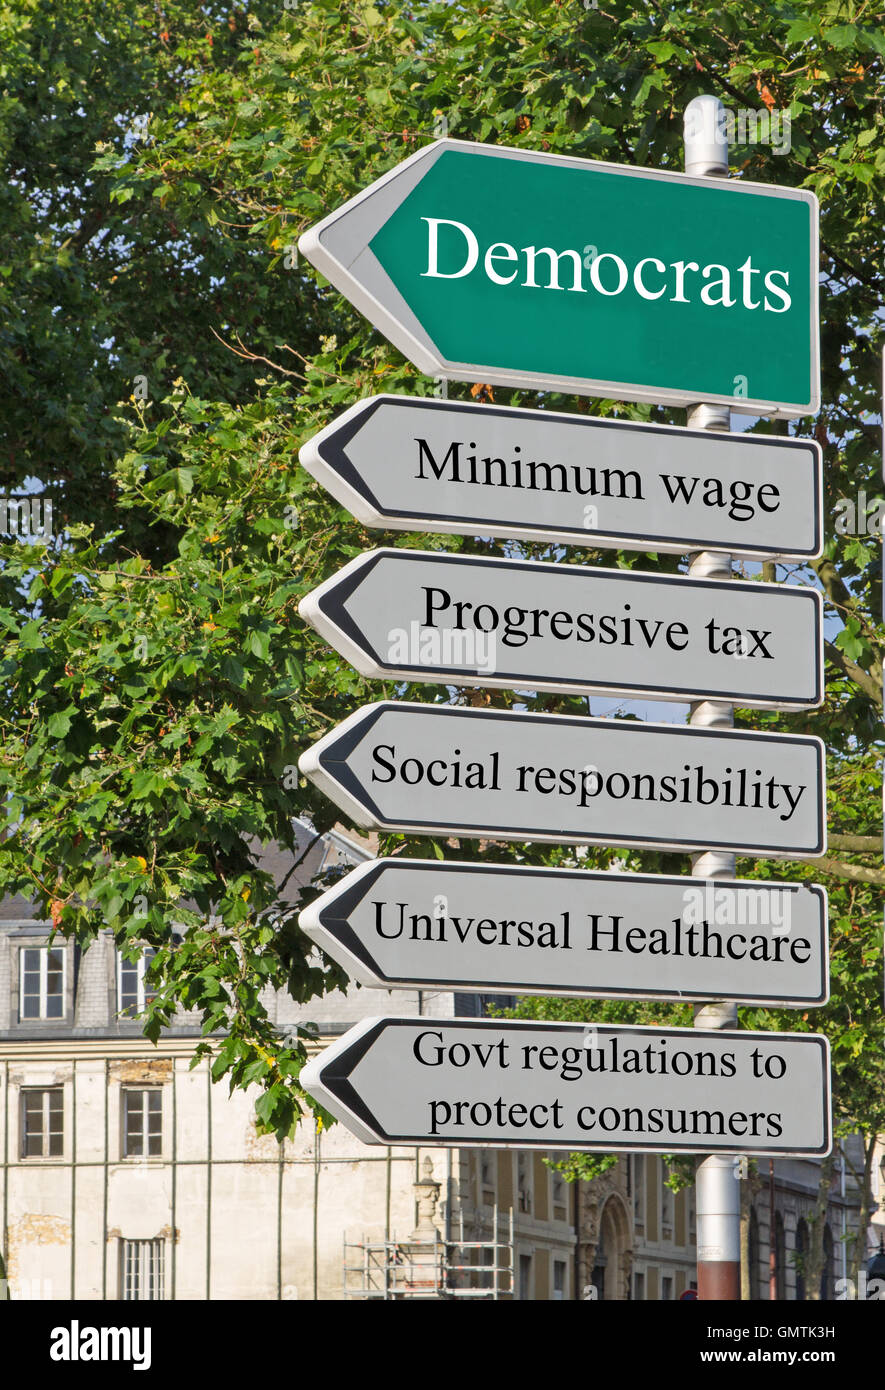 Un concetto cartello stradale rivolta a sinistra che mostra i criteri di base per il partito democratico Foto Stock